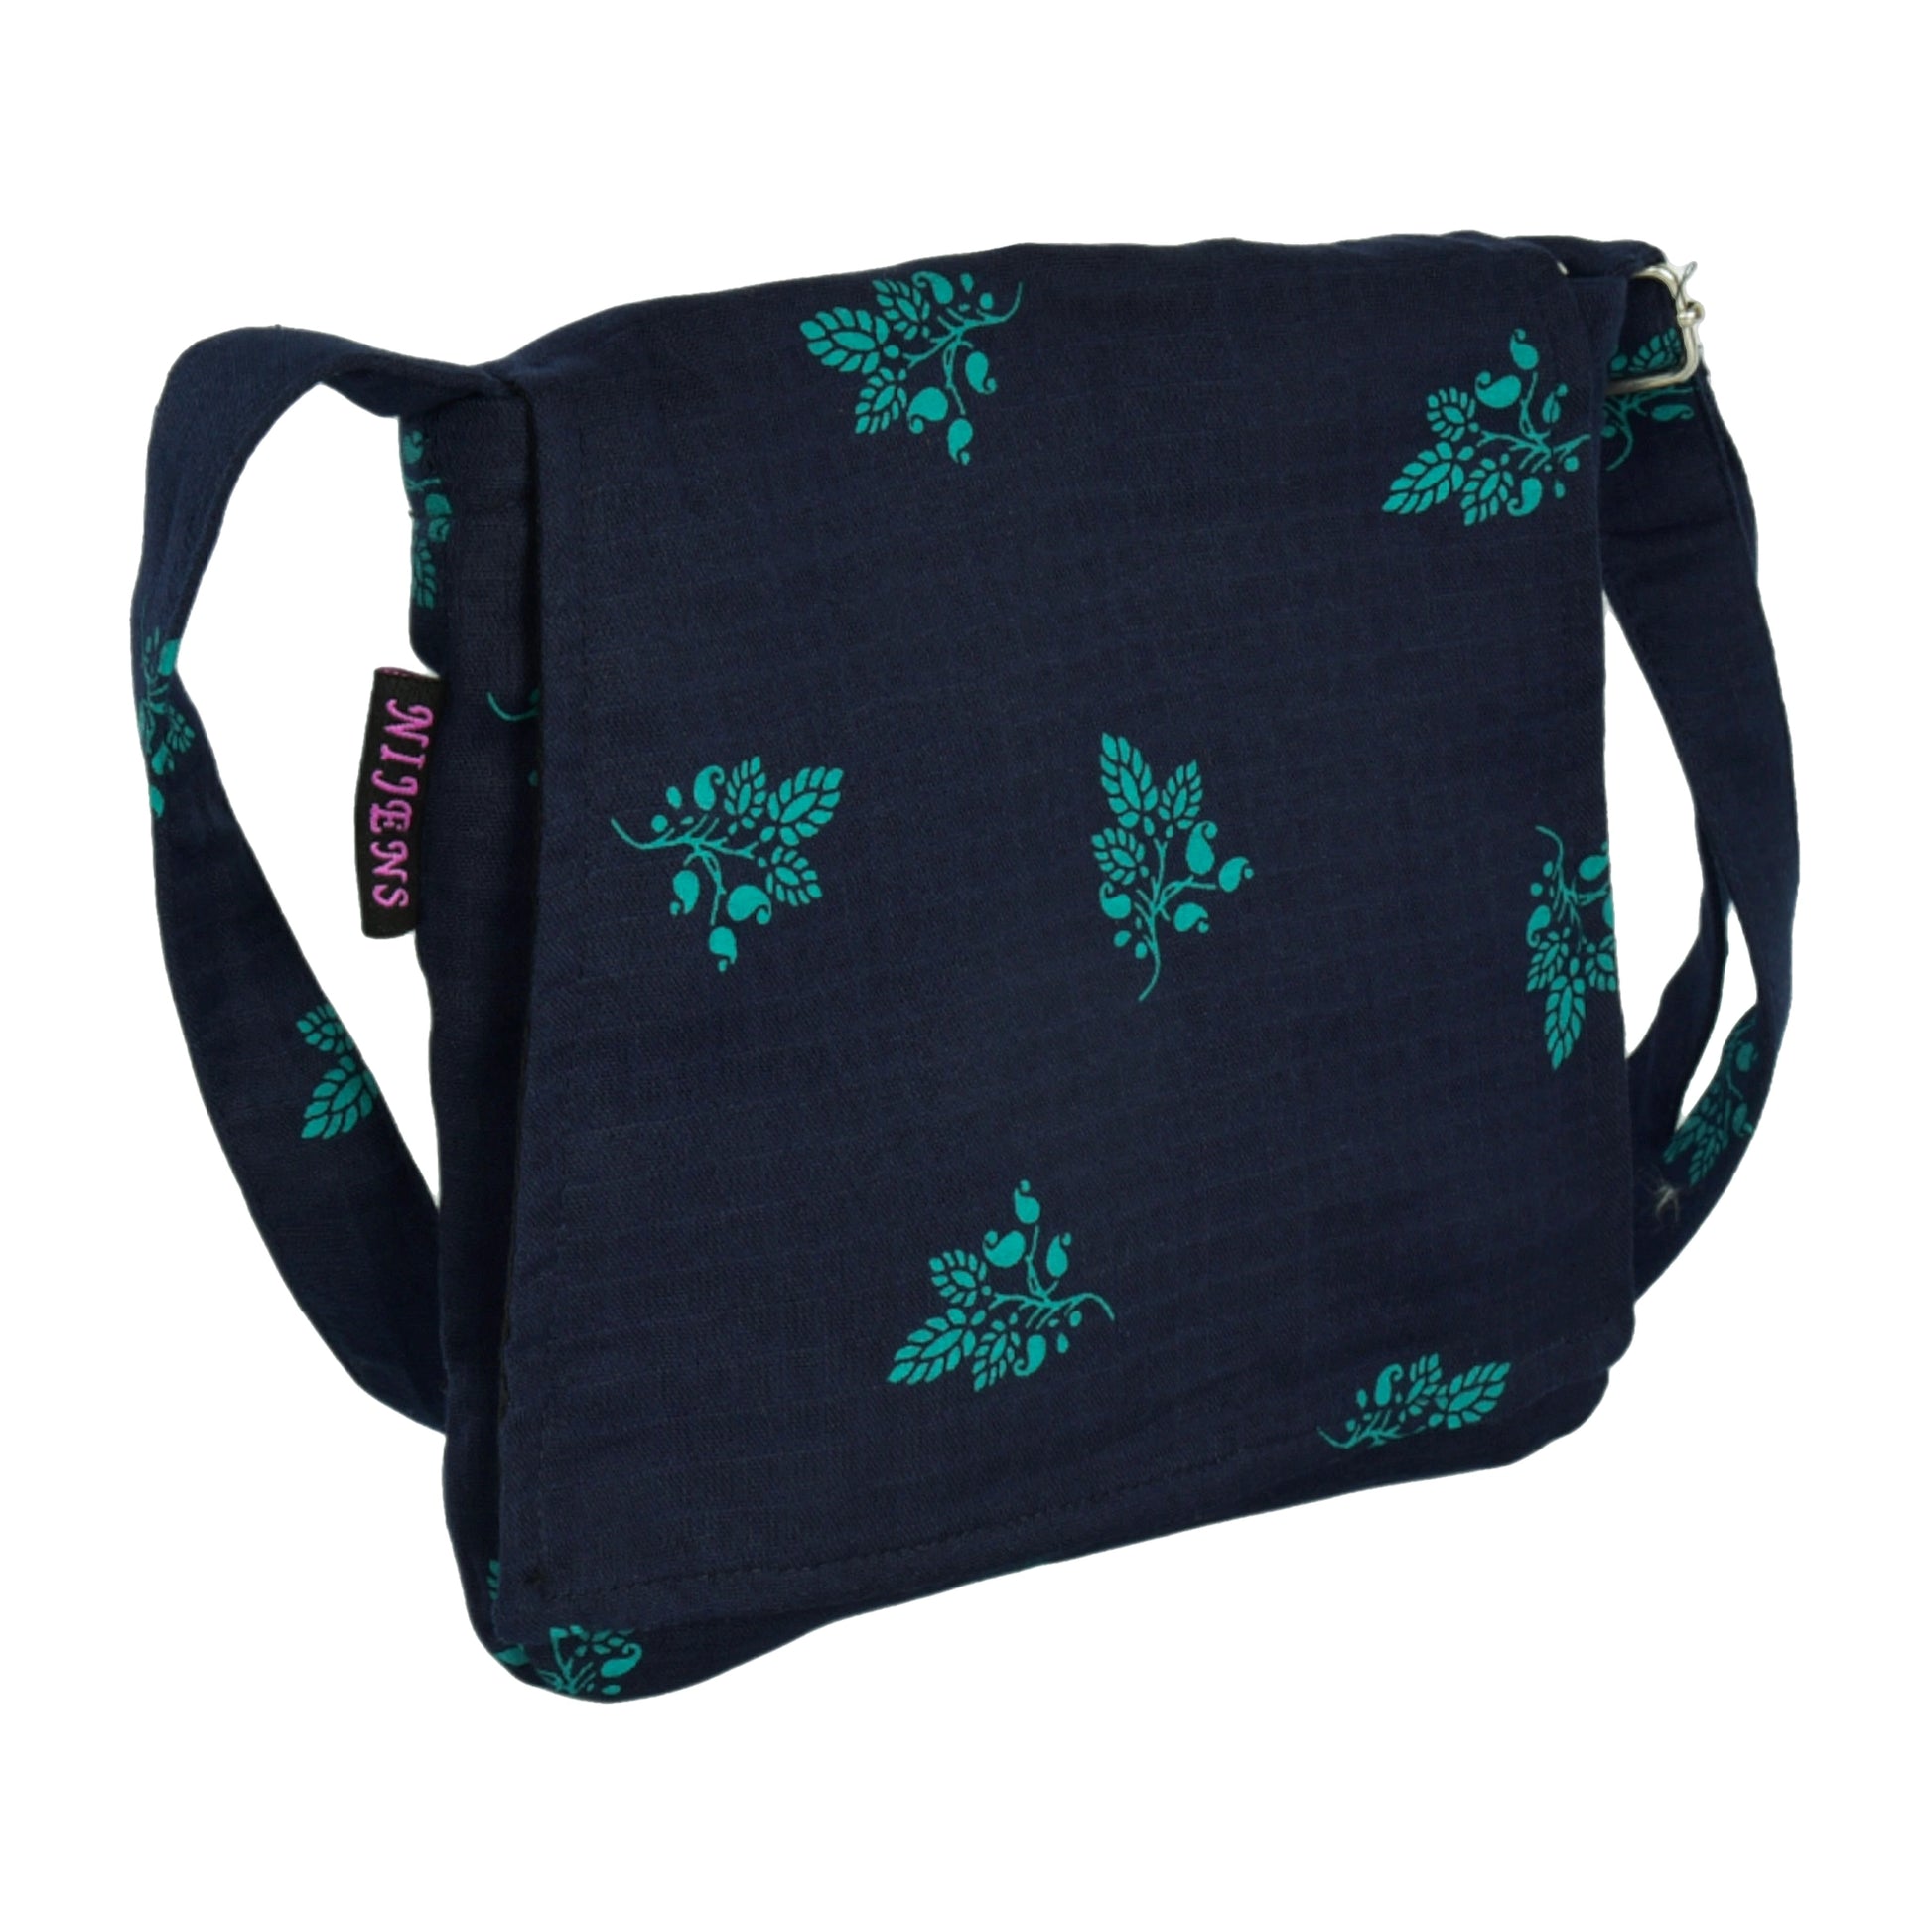 Kleine Tasche, Umhängetasche aus Baumwolle, Dunkelblau mit türkisenen Blättern, Motiv. Ein Hauptfach mit Einsteckfach und jeweils ein Reißverschlussfach vorne und hinten.